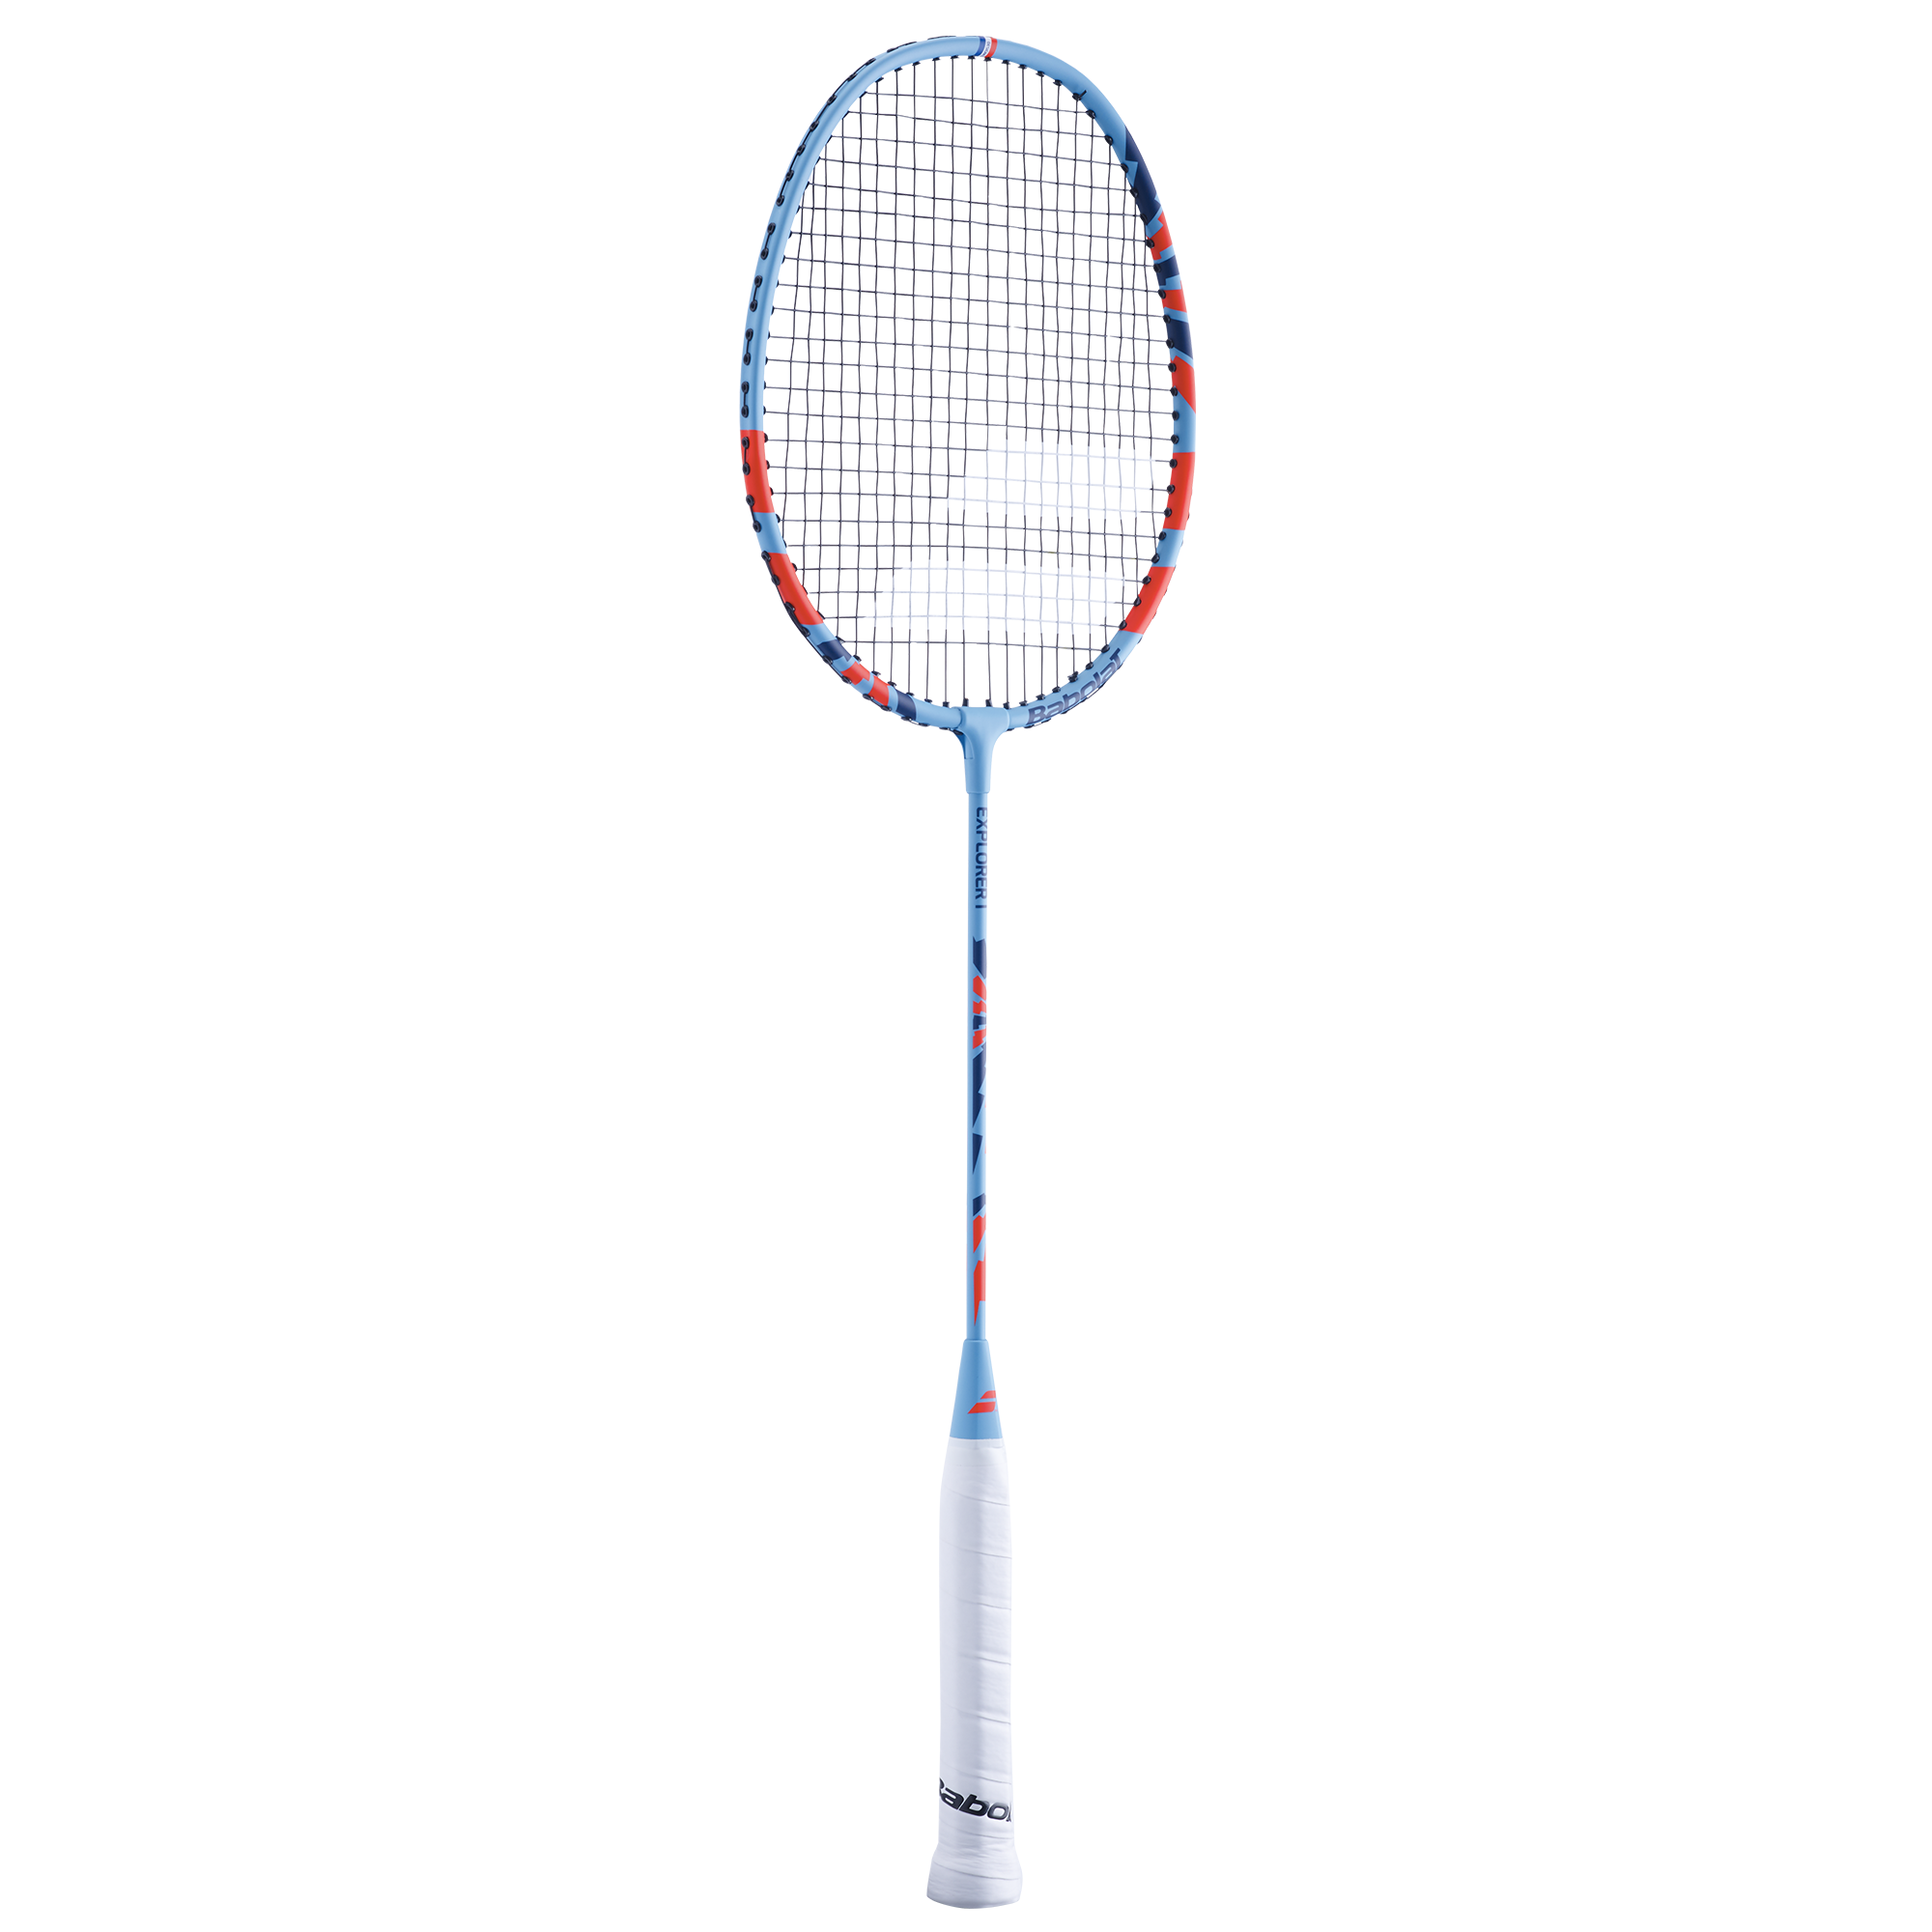 Raquette de Badminton Babolat Explorer I Bleue pour les clubs et